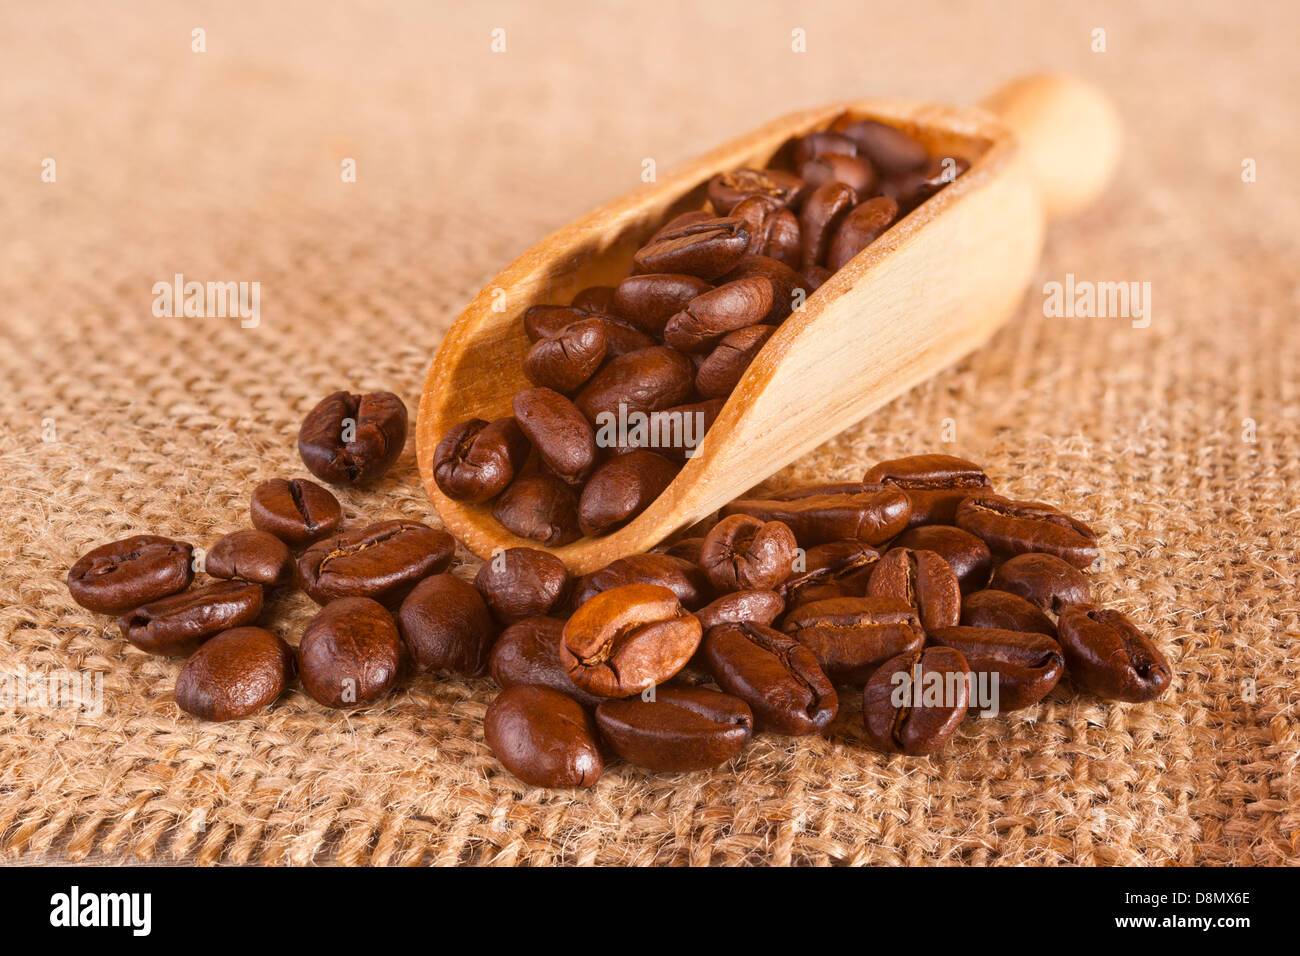 Los granos de café derramándose desde una boca sobre un fondo de arpillera o de yute. Foto de stock